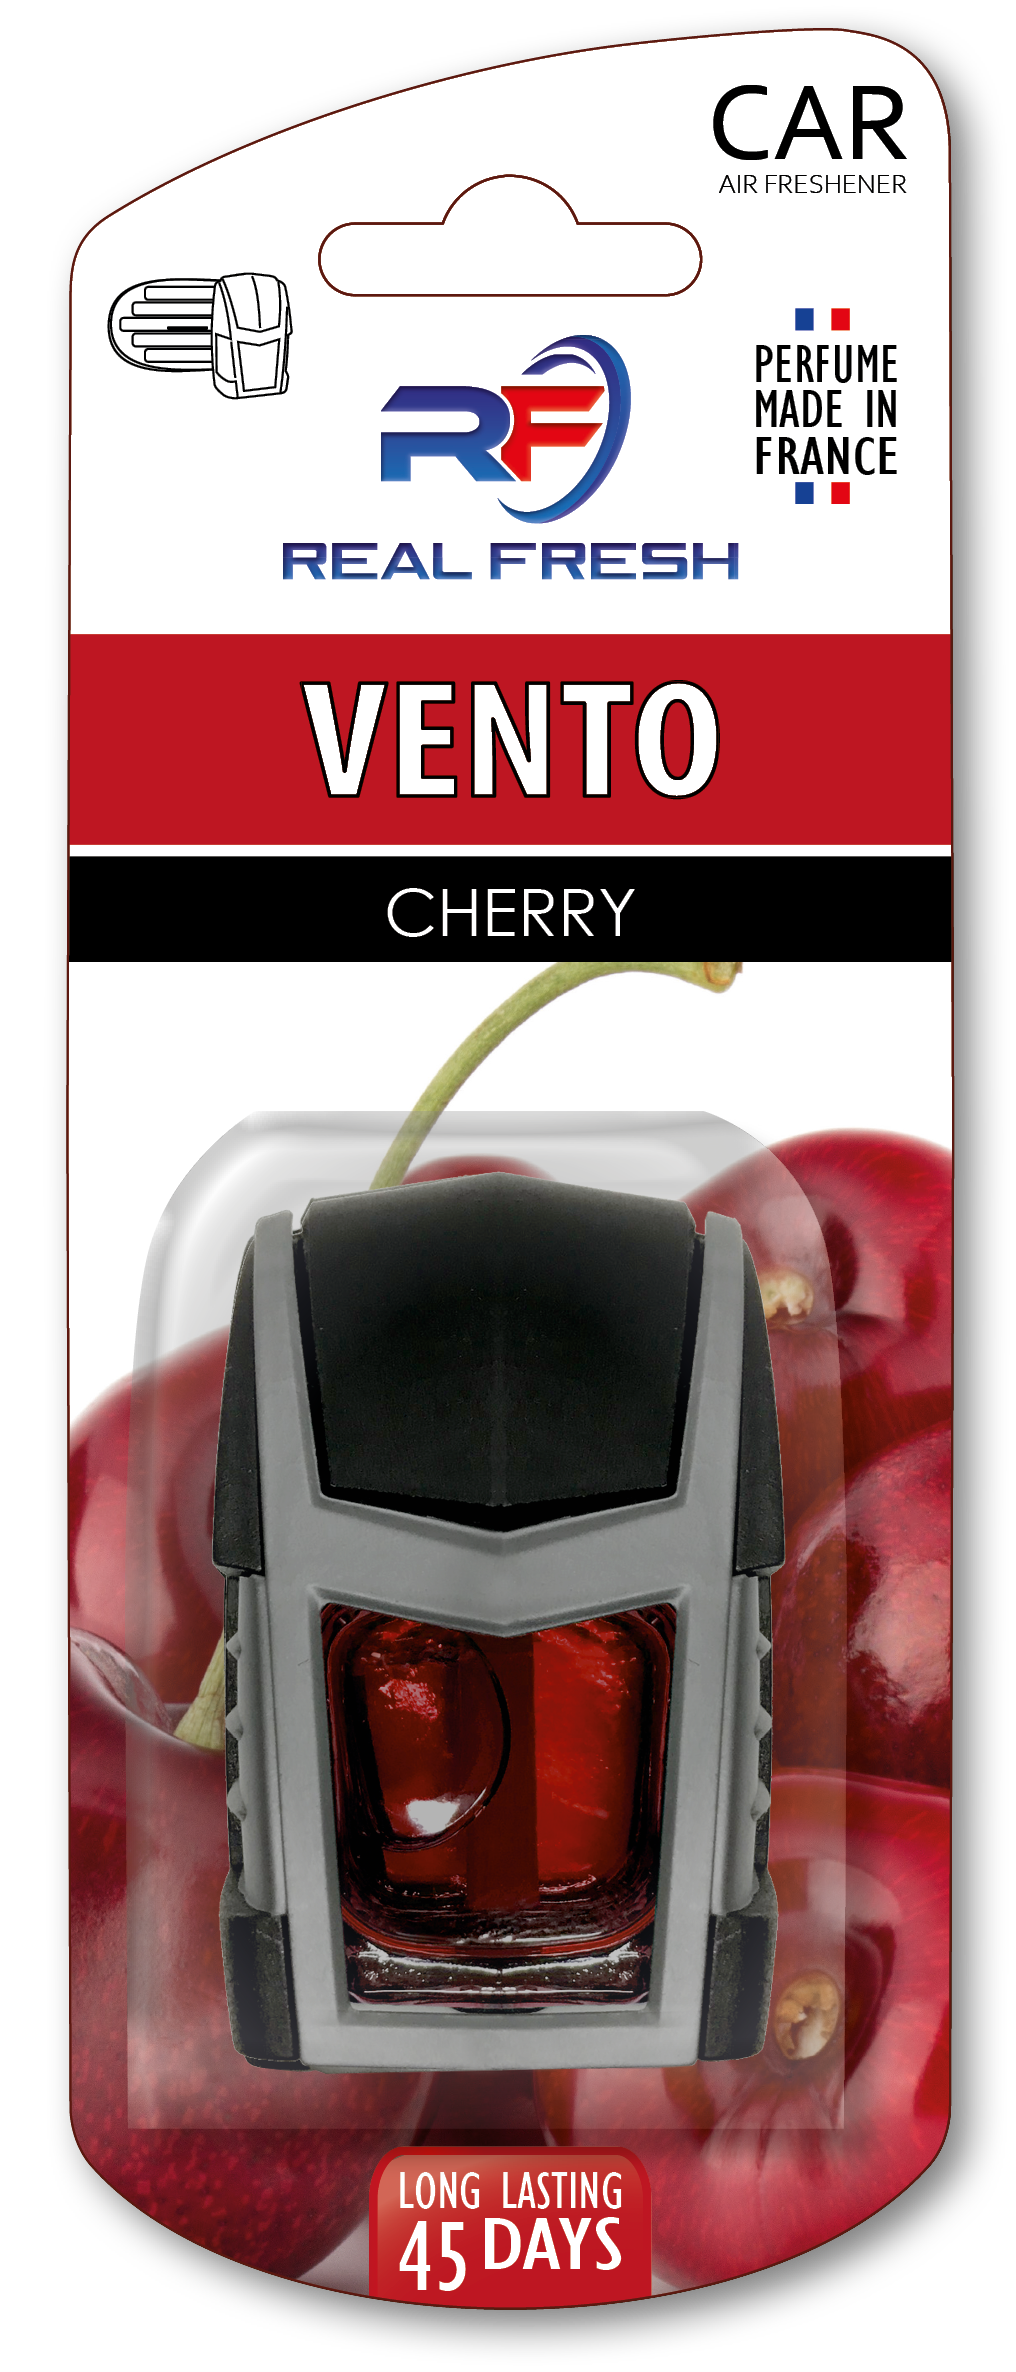 Vento Cherry Image